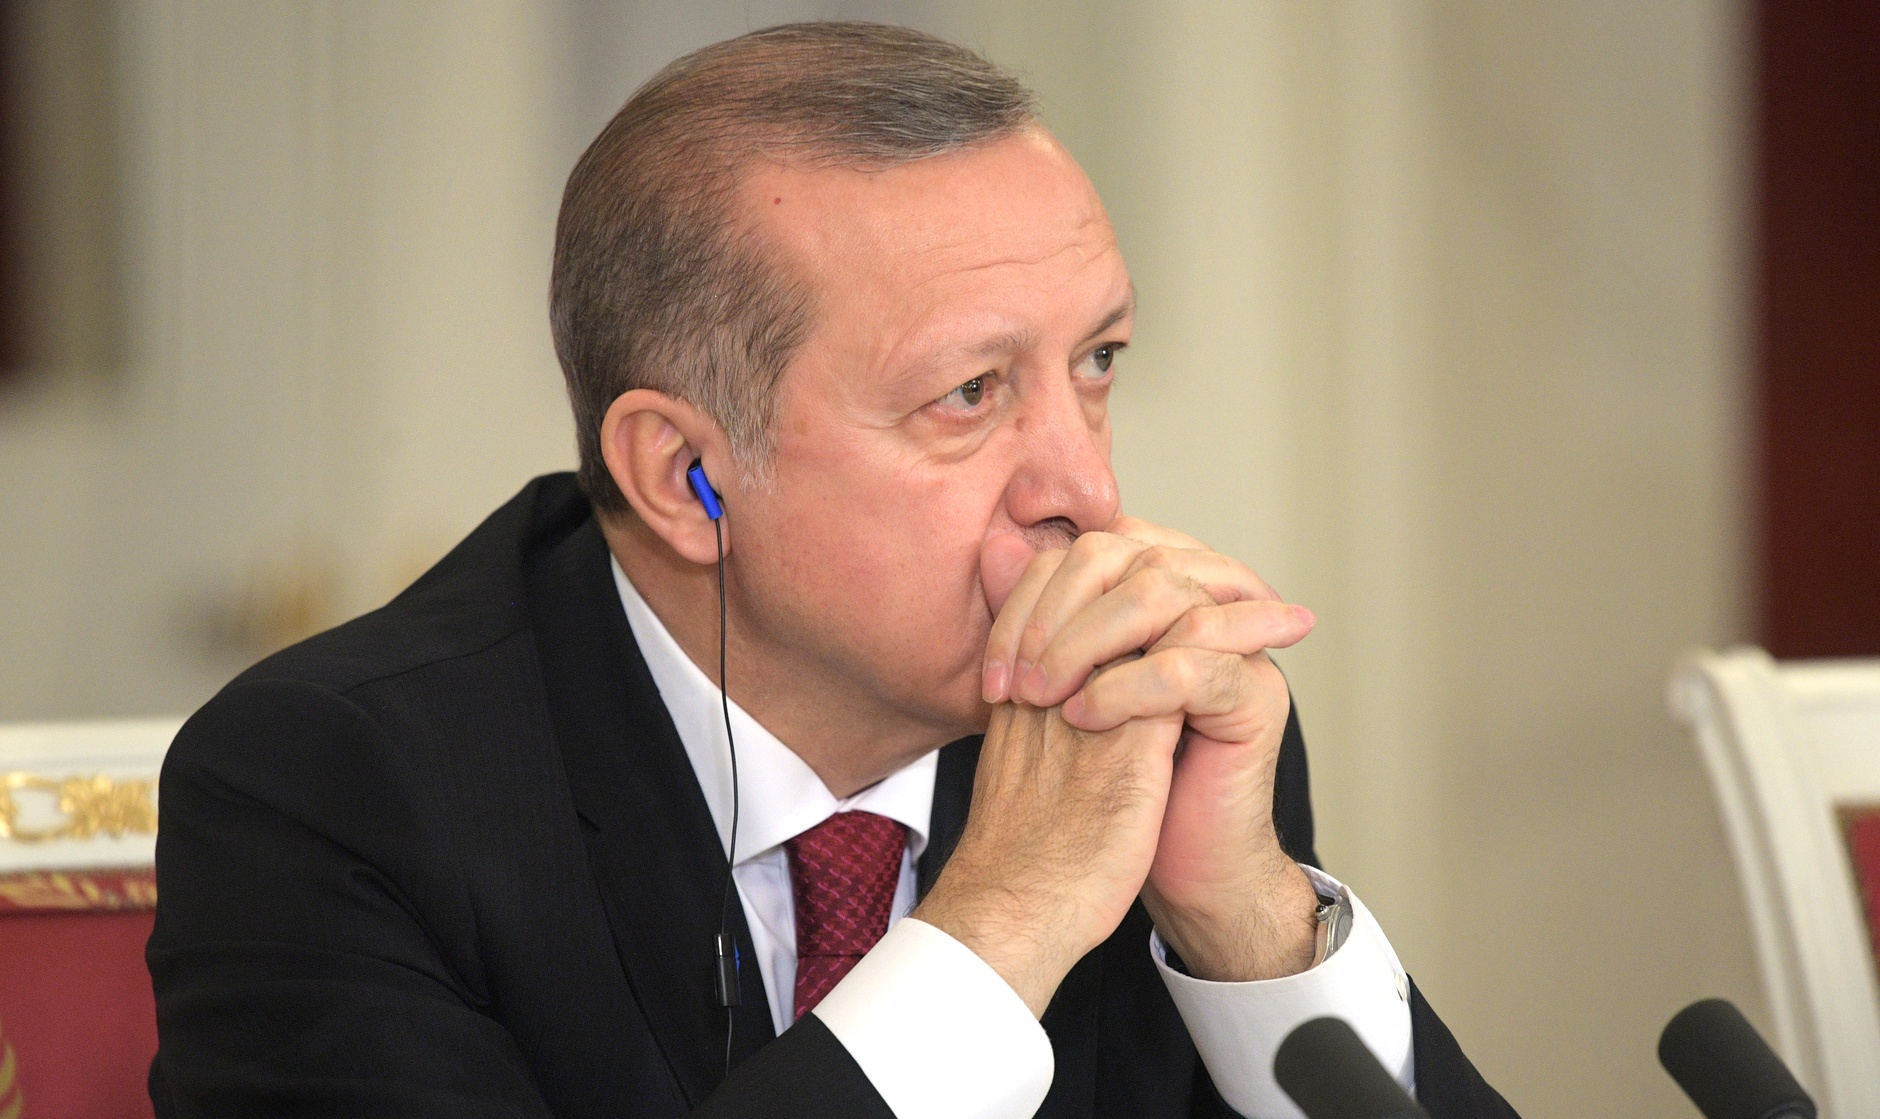 Líder do movimento Hizmet, Fethullah Gulen acusa Erdogan de ter encenado golpe para concentrar o poder em suas mãos e perseguir adversários